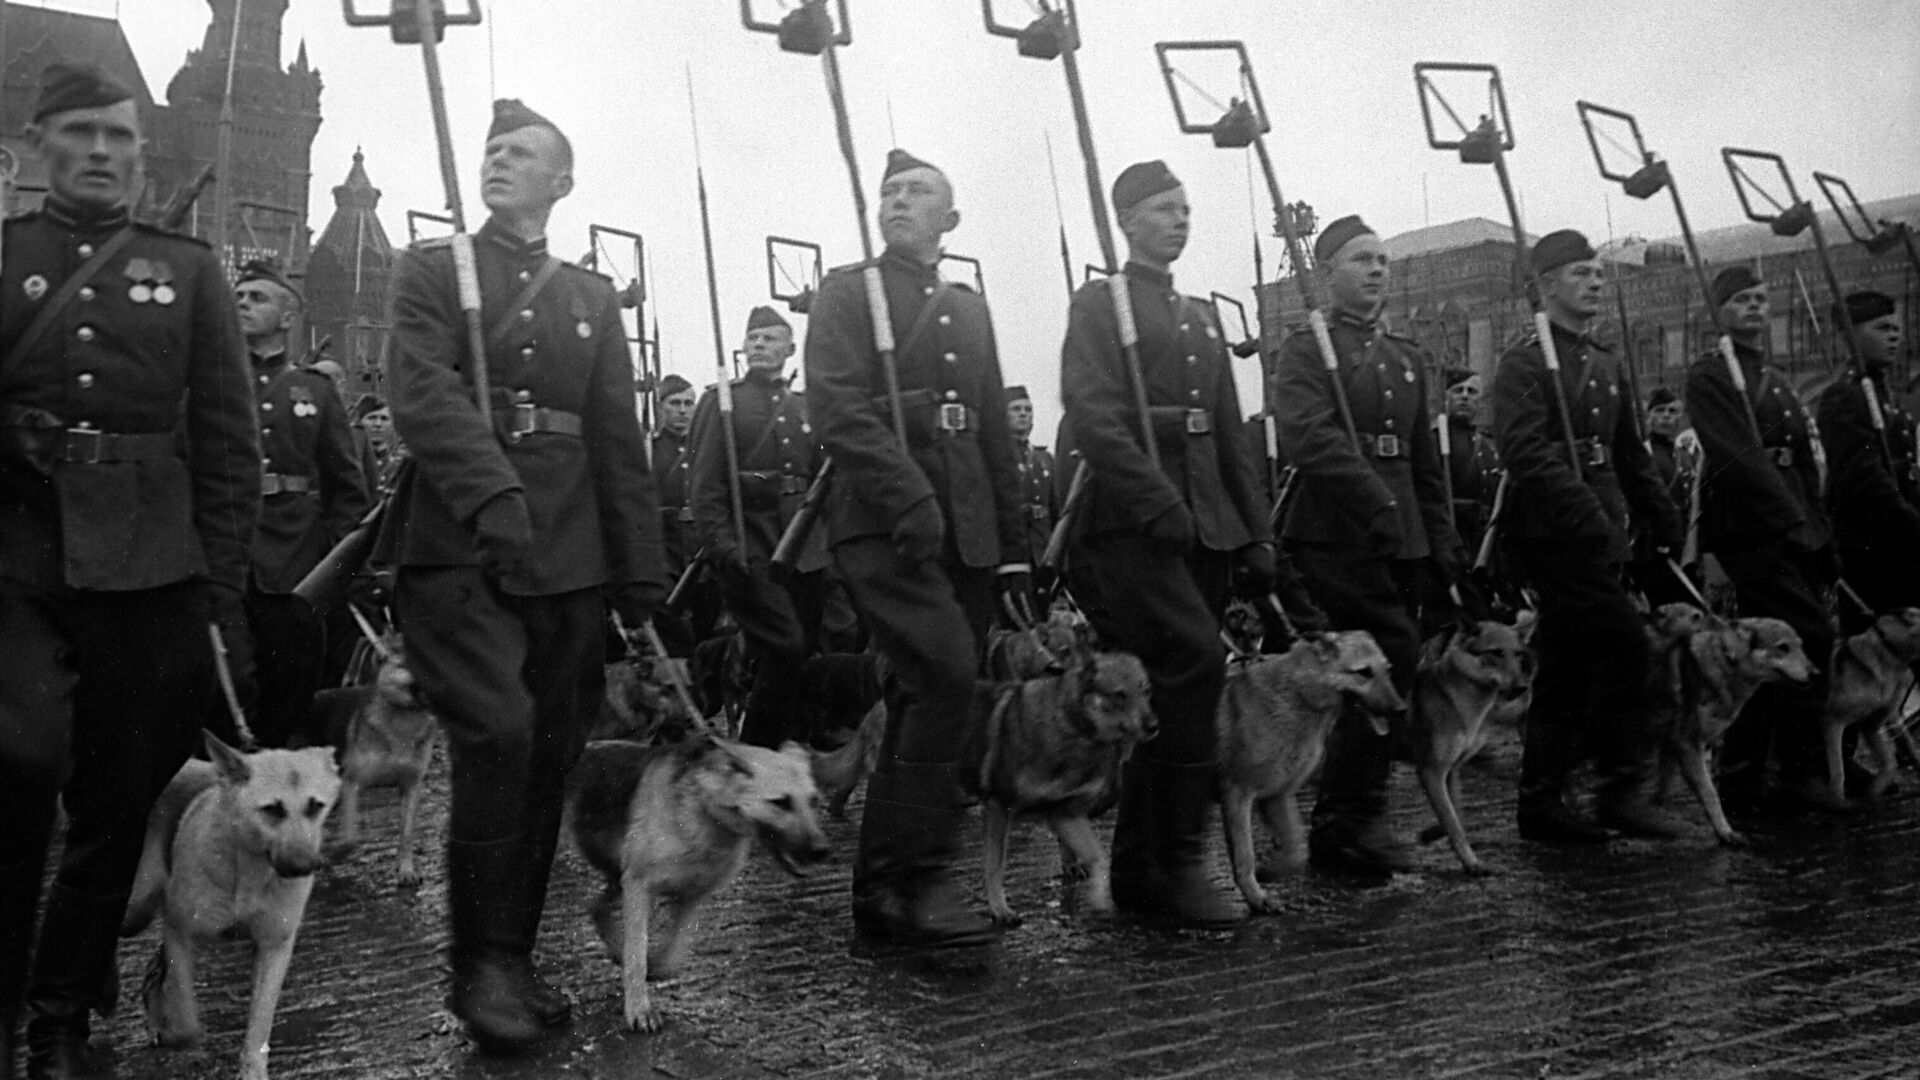 Минеры с собаками минно-разыскной службы на Параде Победы на Красной площади 24 июня 1945 года - РИА Новости, 1920, 24.06.2020